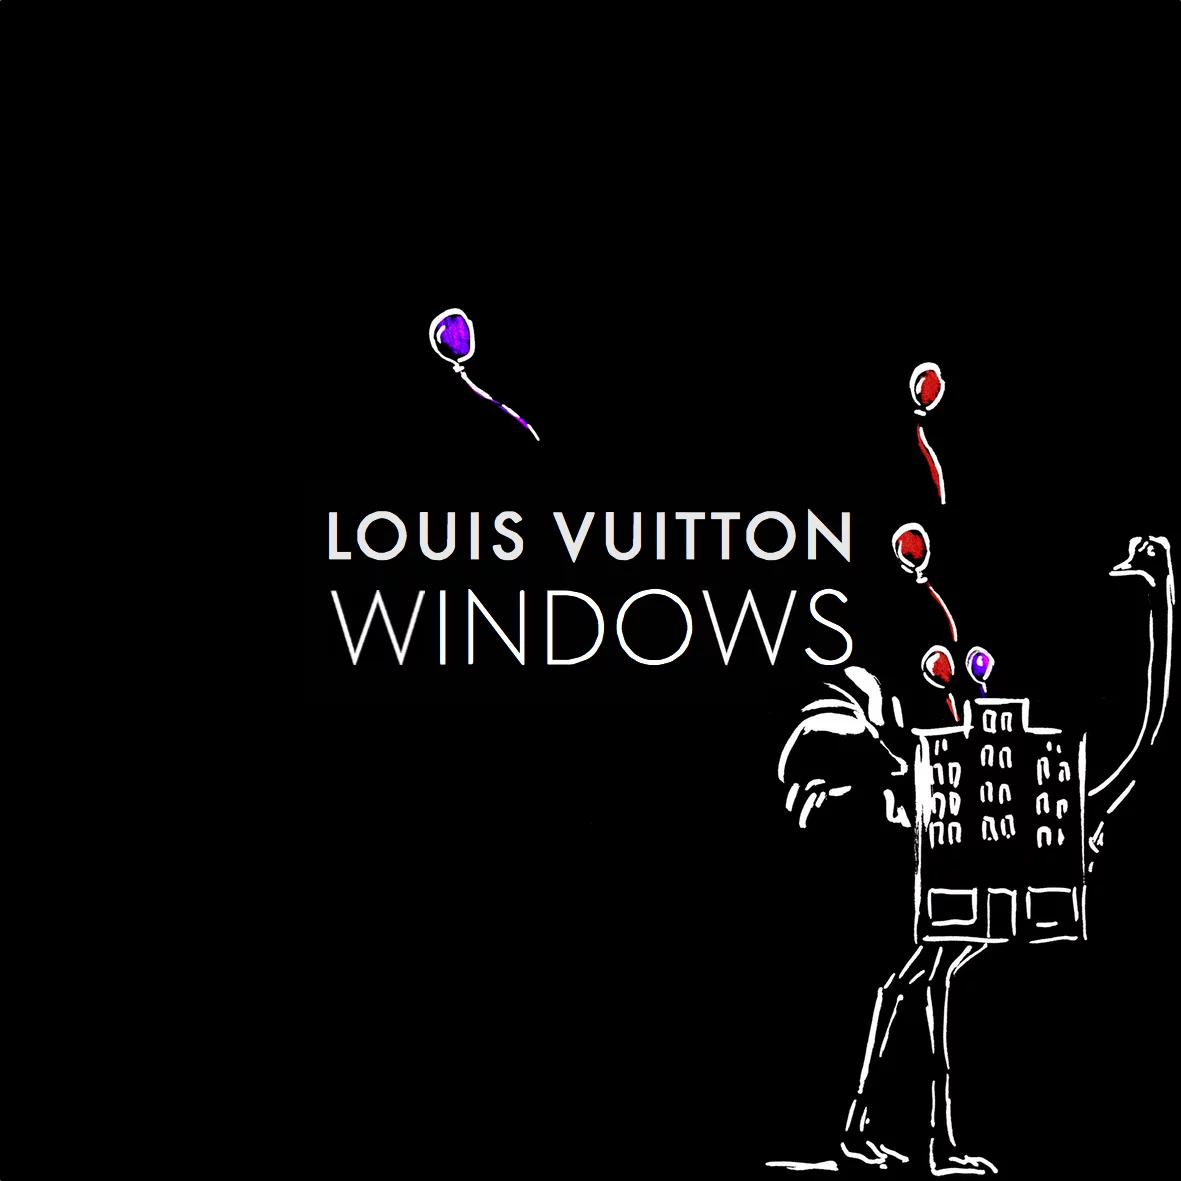 Louis Vuitton by Clym EVERNDEN